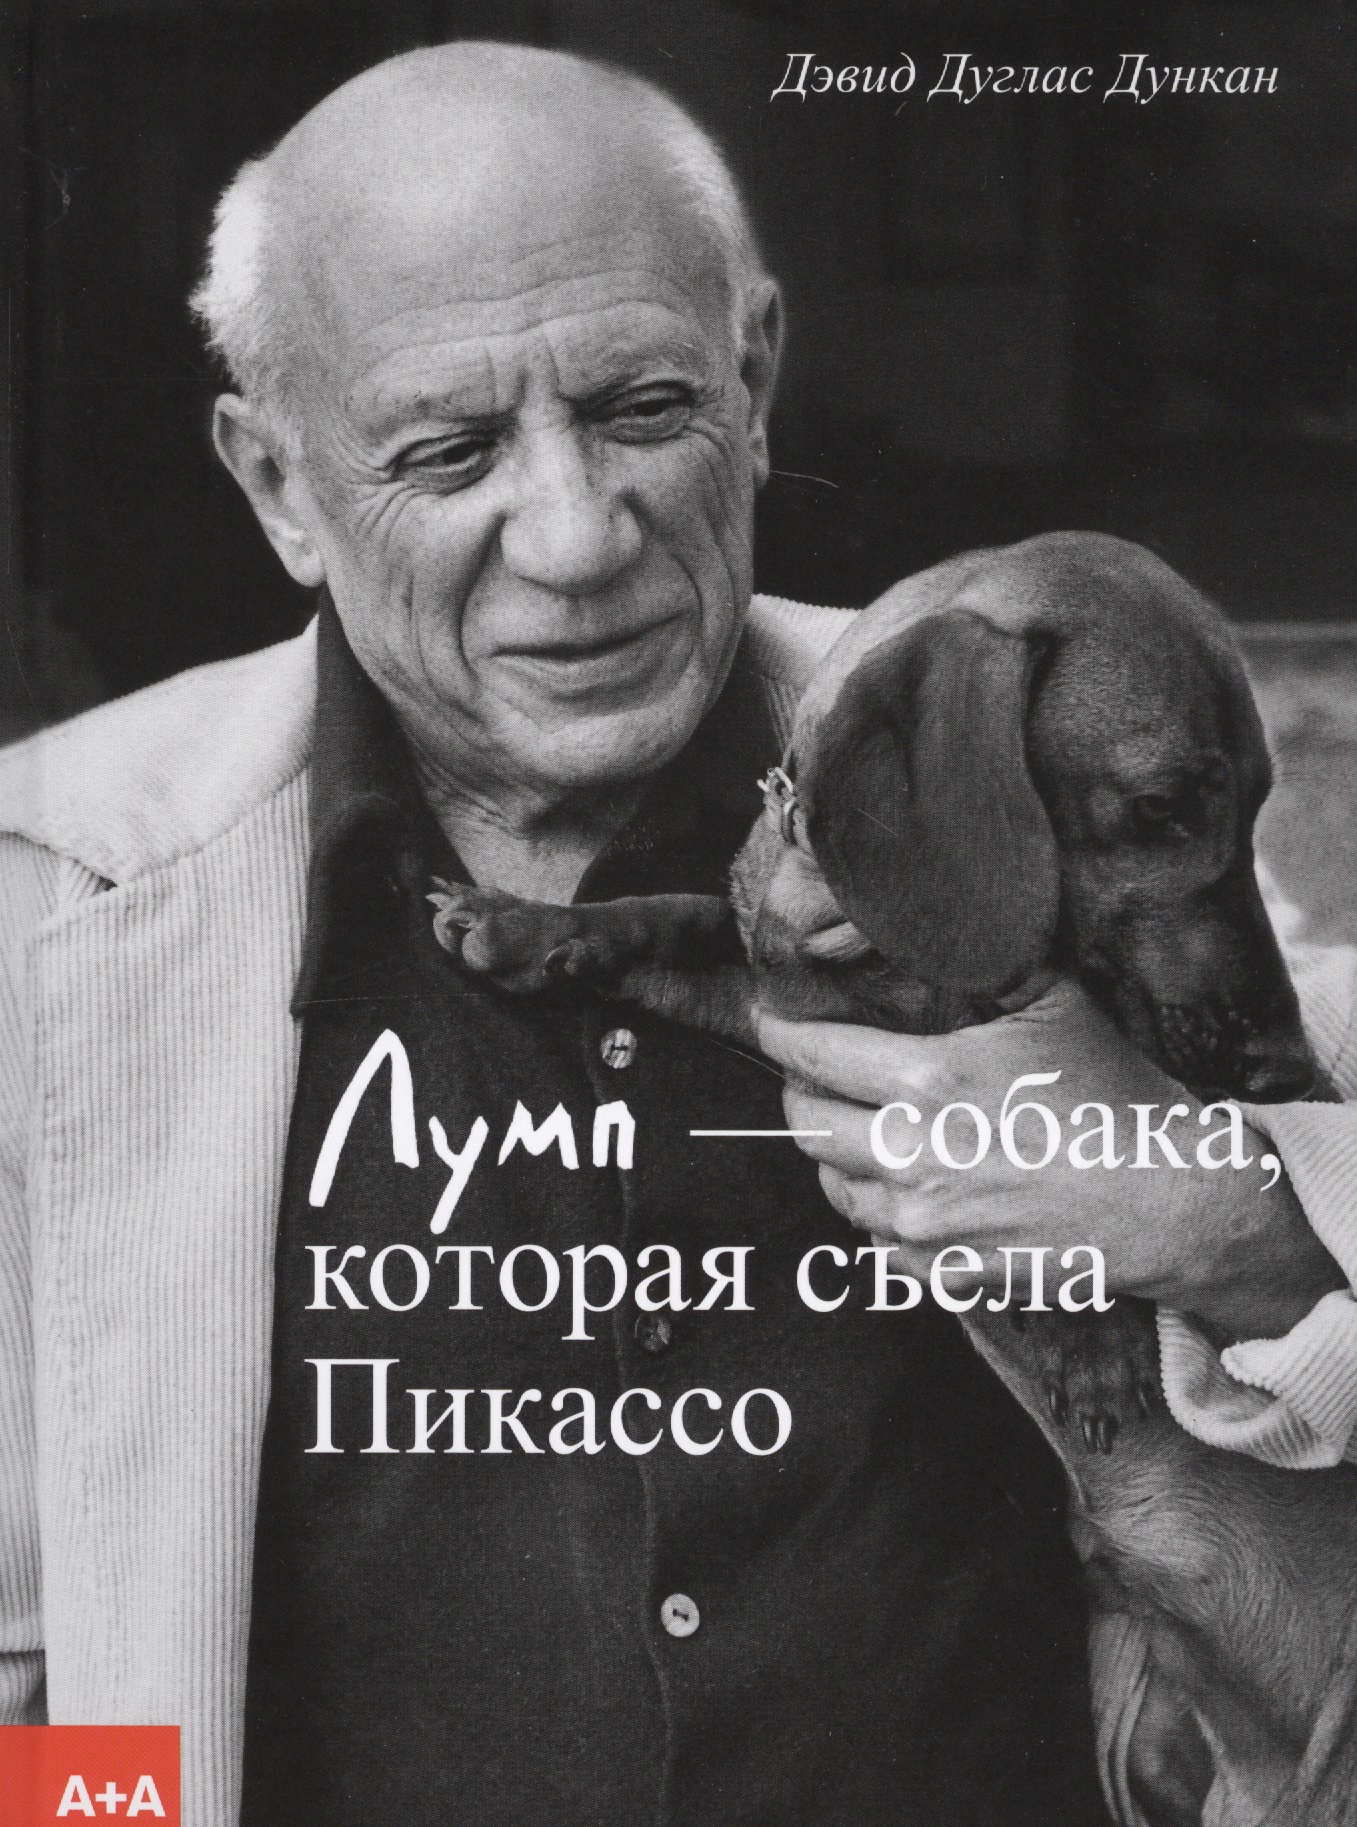 Дункан Дэвид Дуглас Лумп — собака, которая съела Пикассо видмайер пикассо оливье пикассо интимный портрет